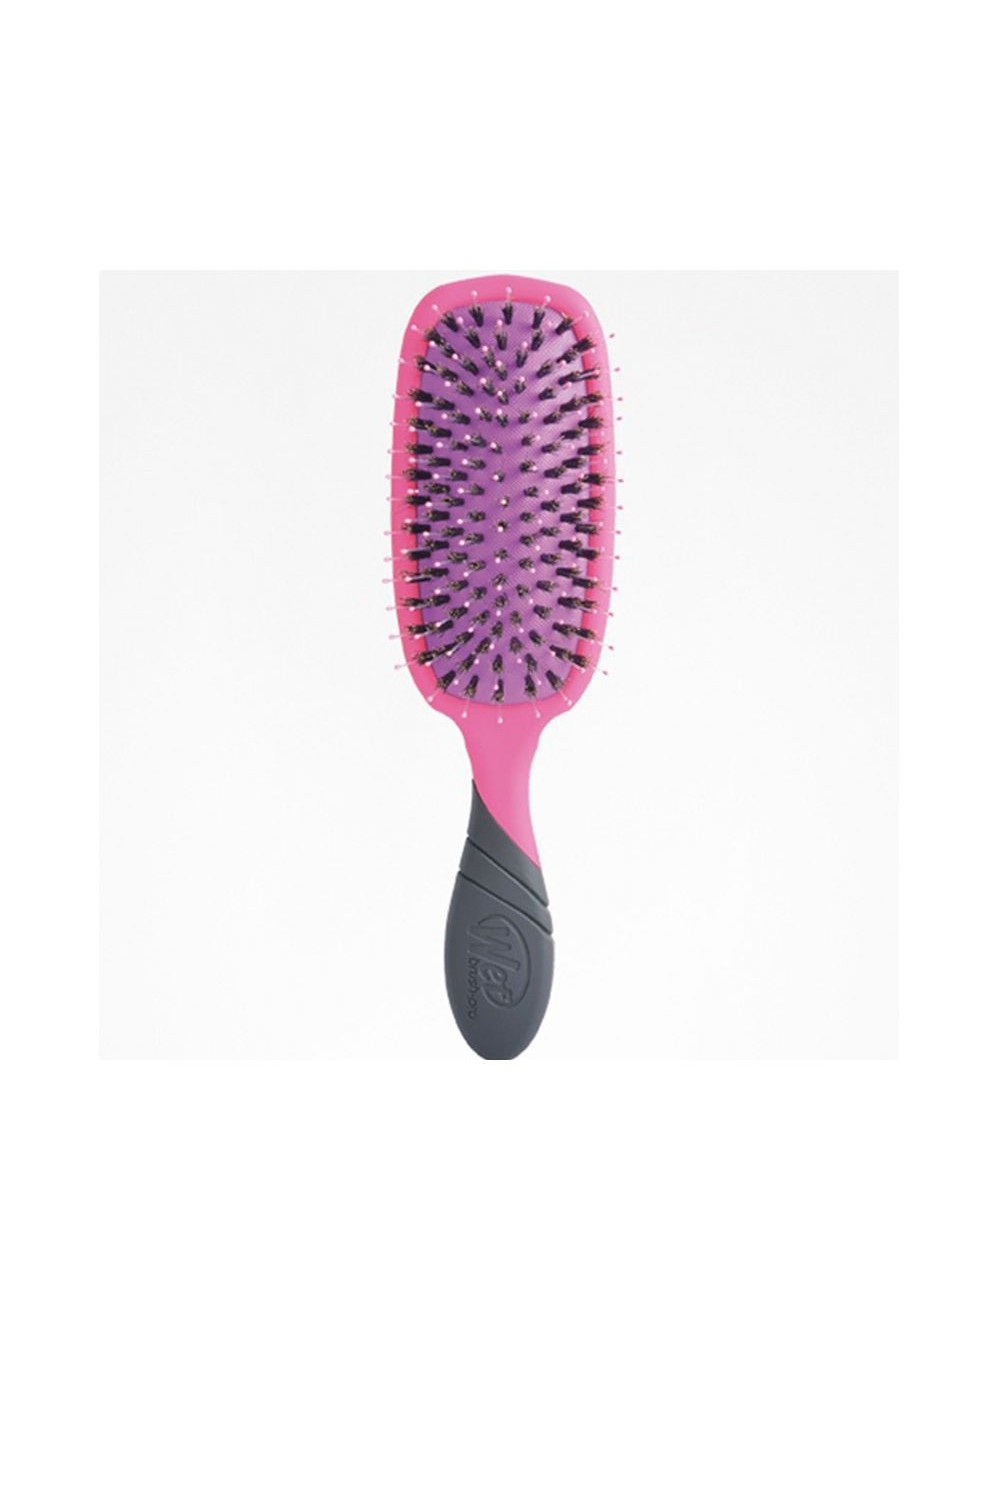 The Wet Brush Professional Pro Shine Enhancer Pink 1 U